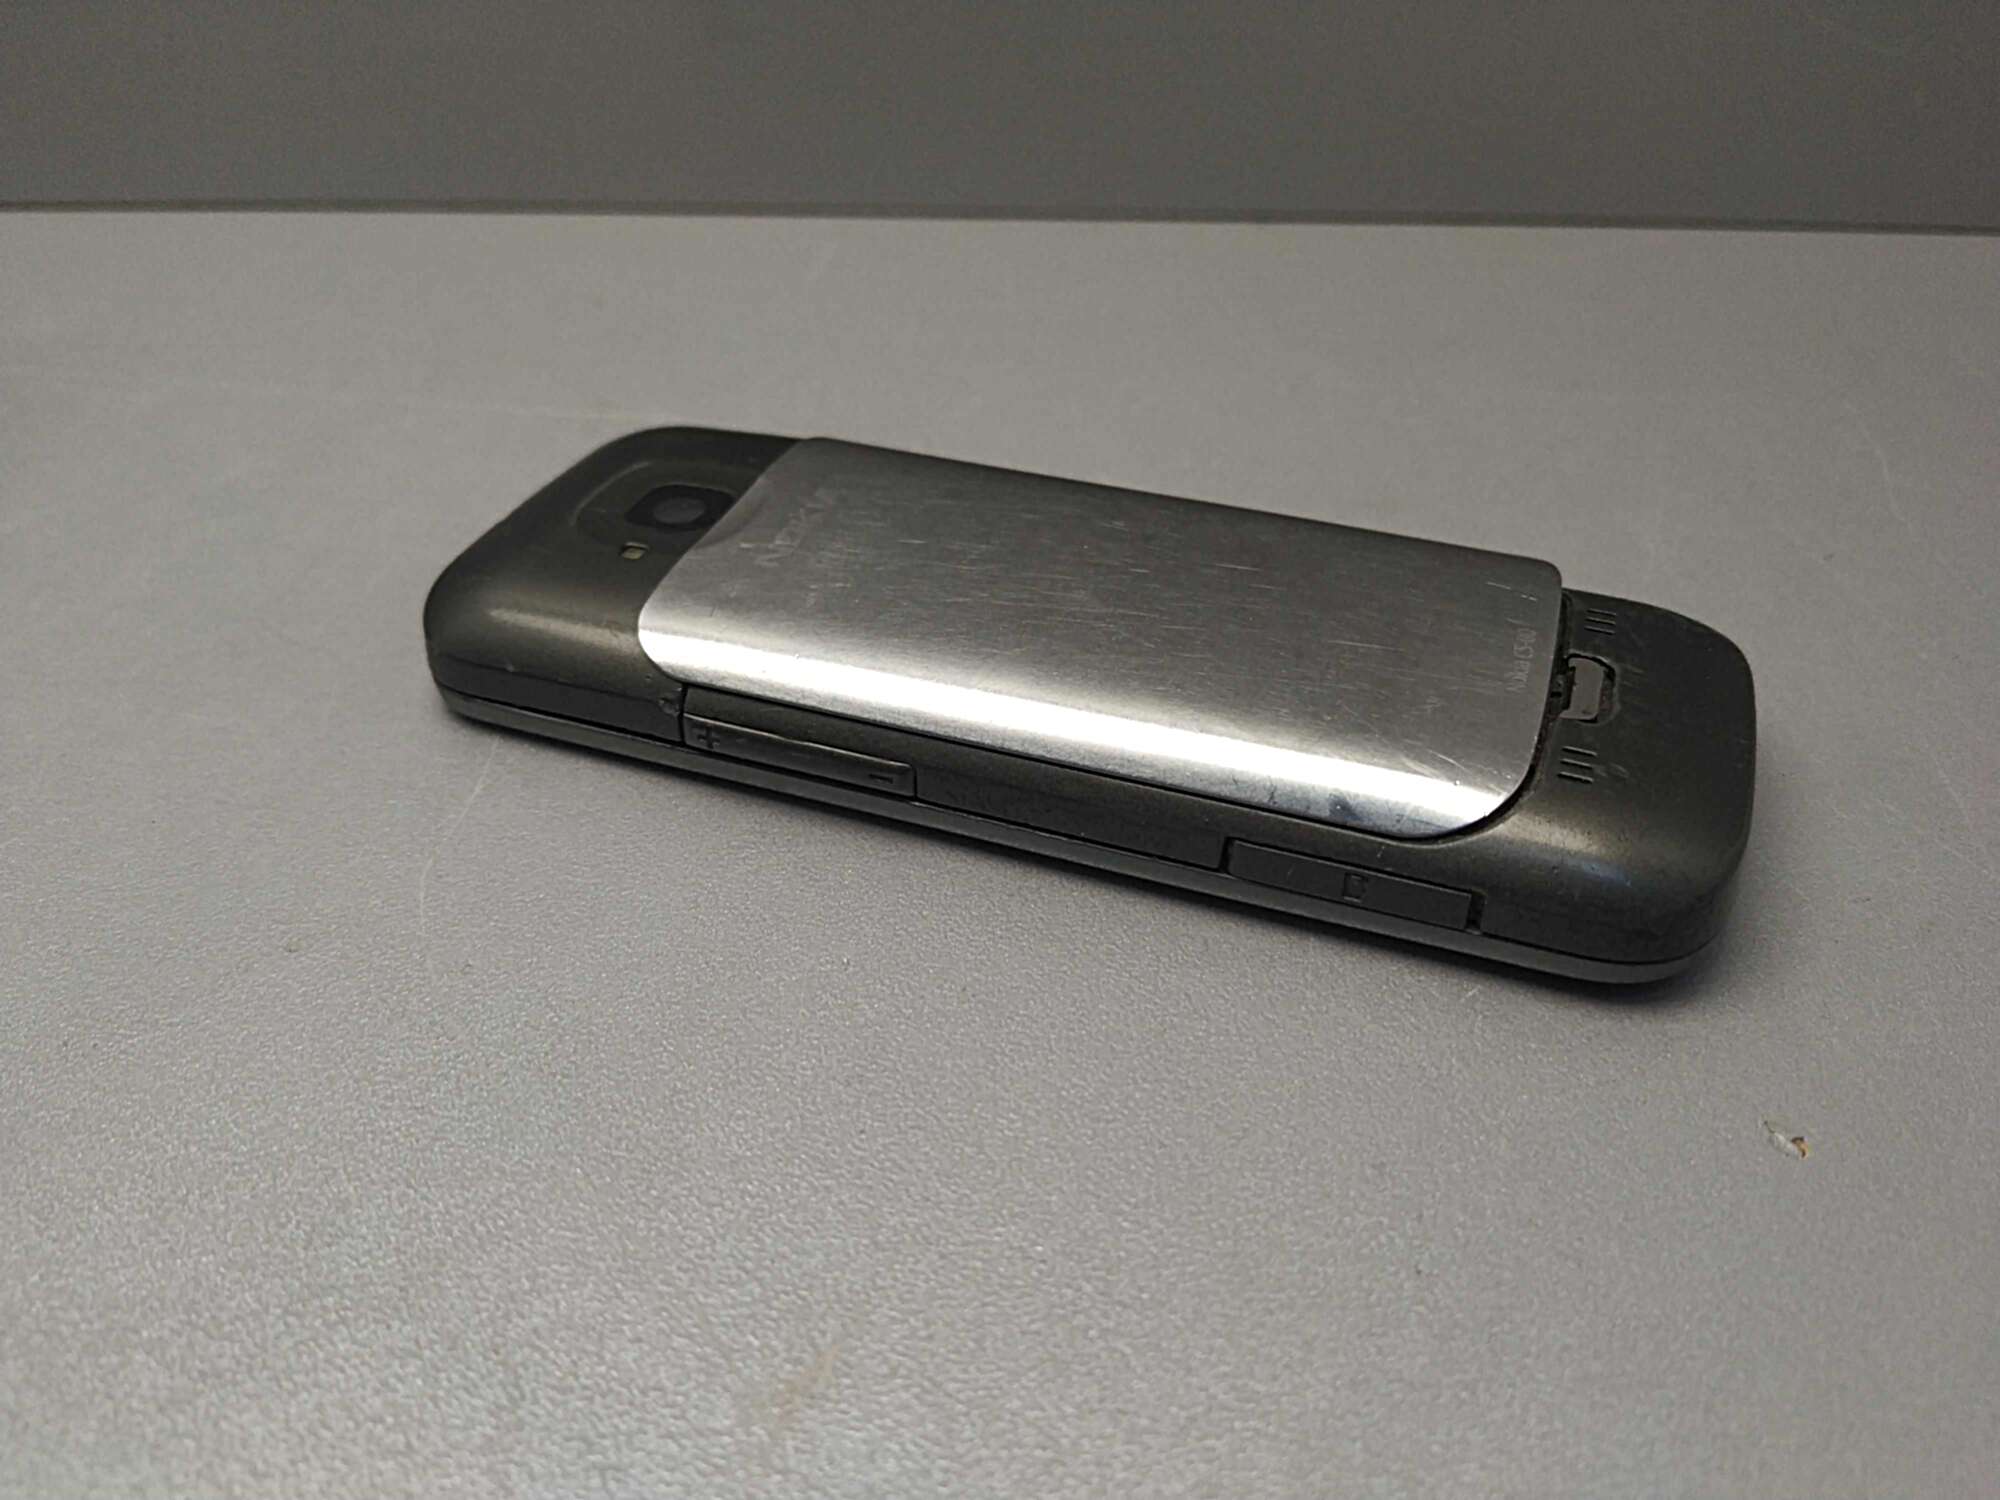 Nokia C5-00 8